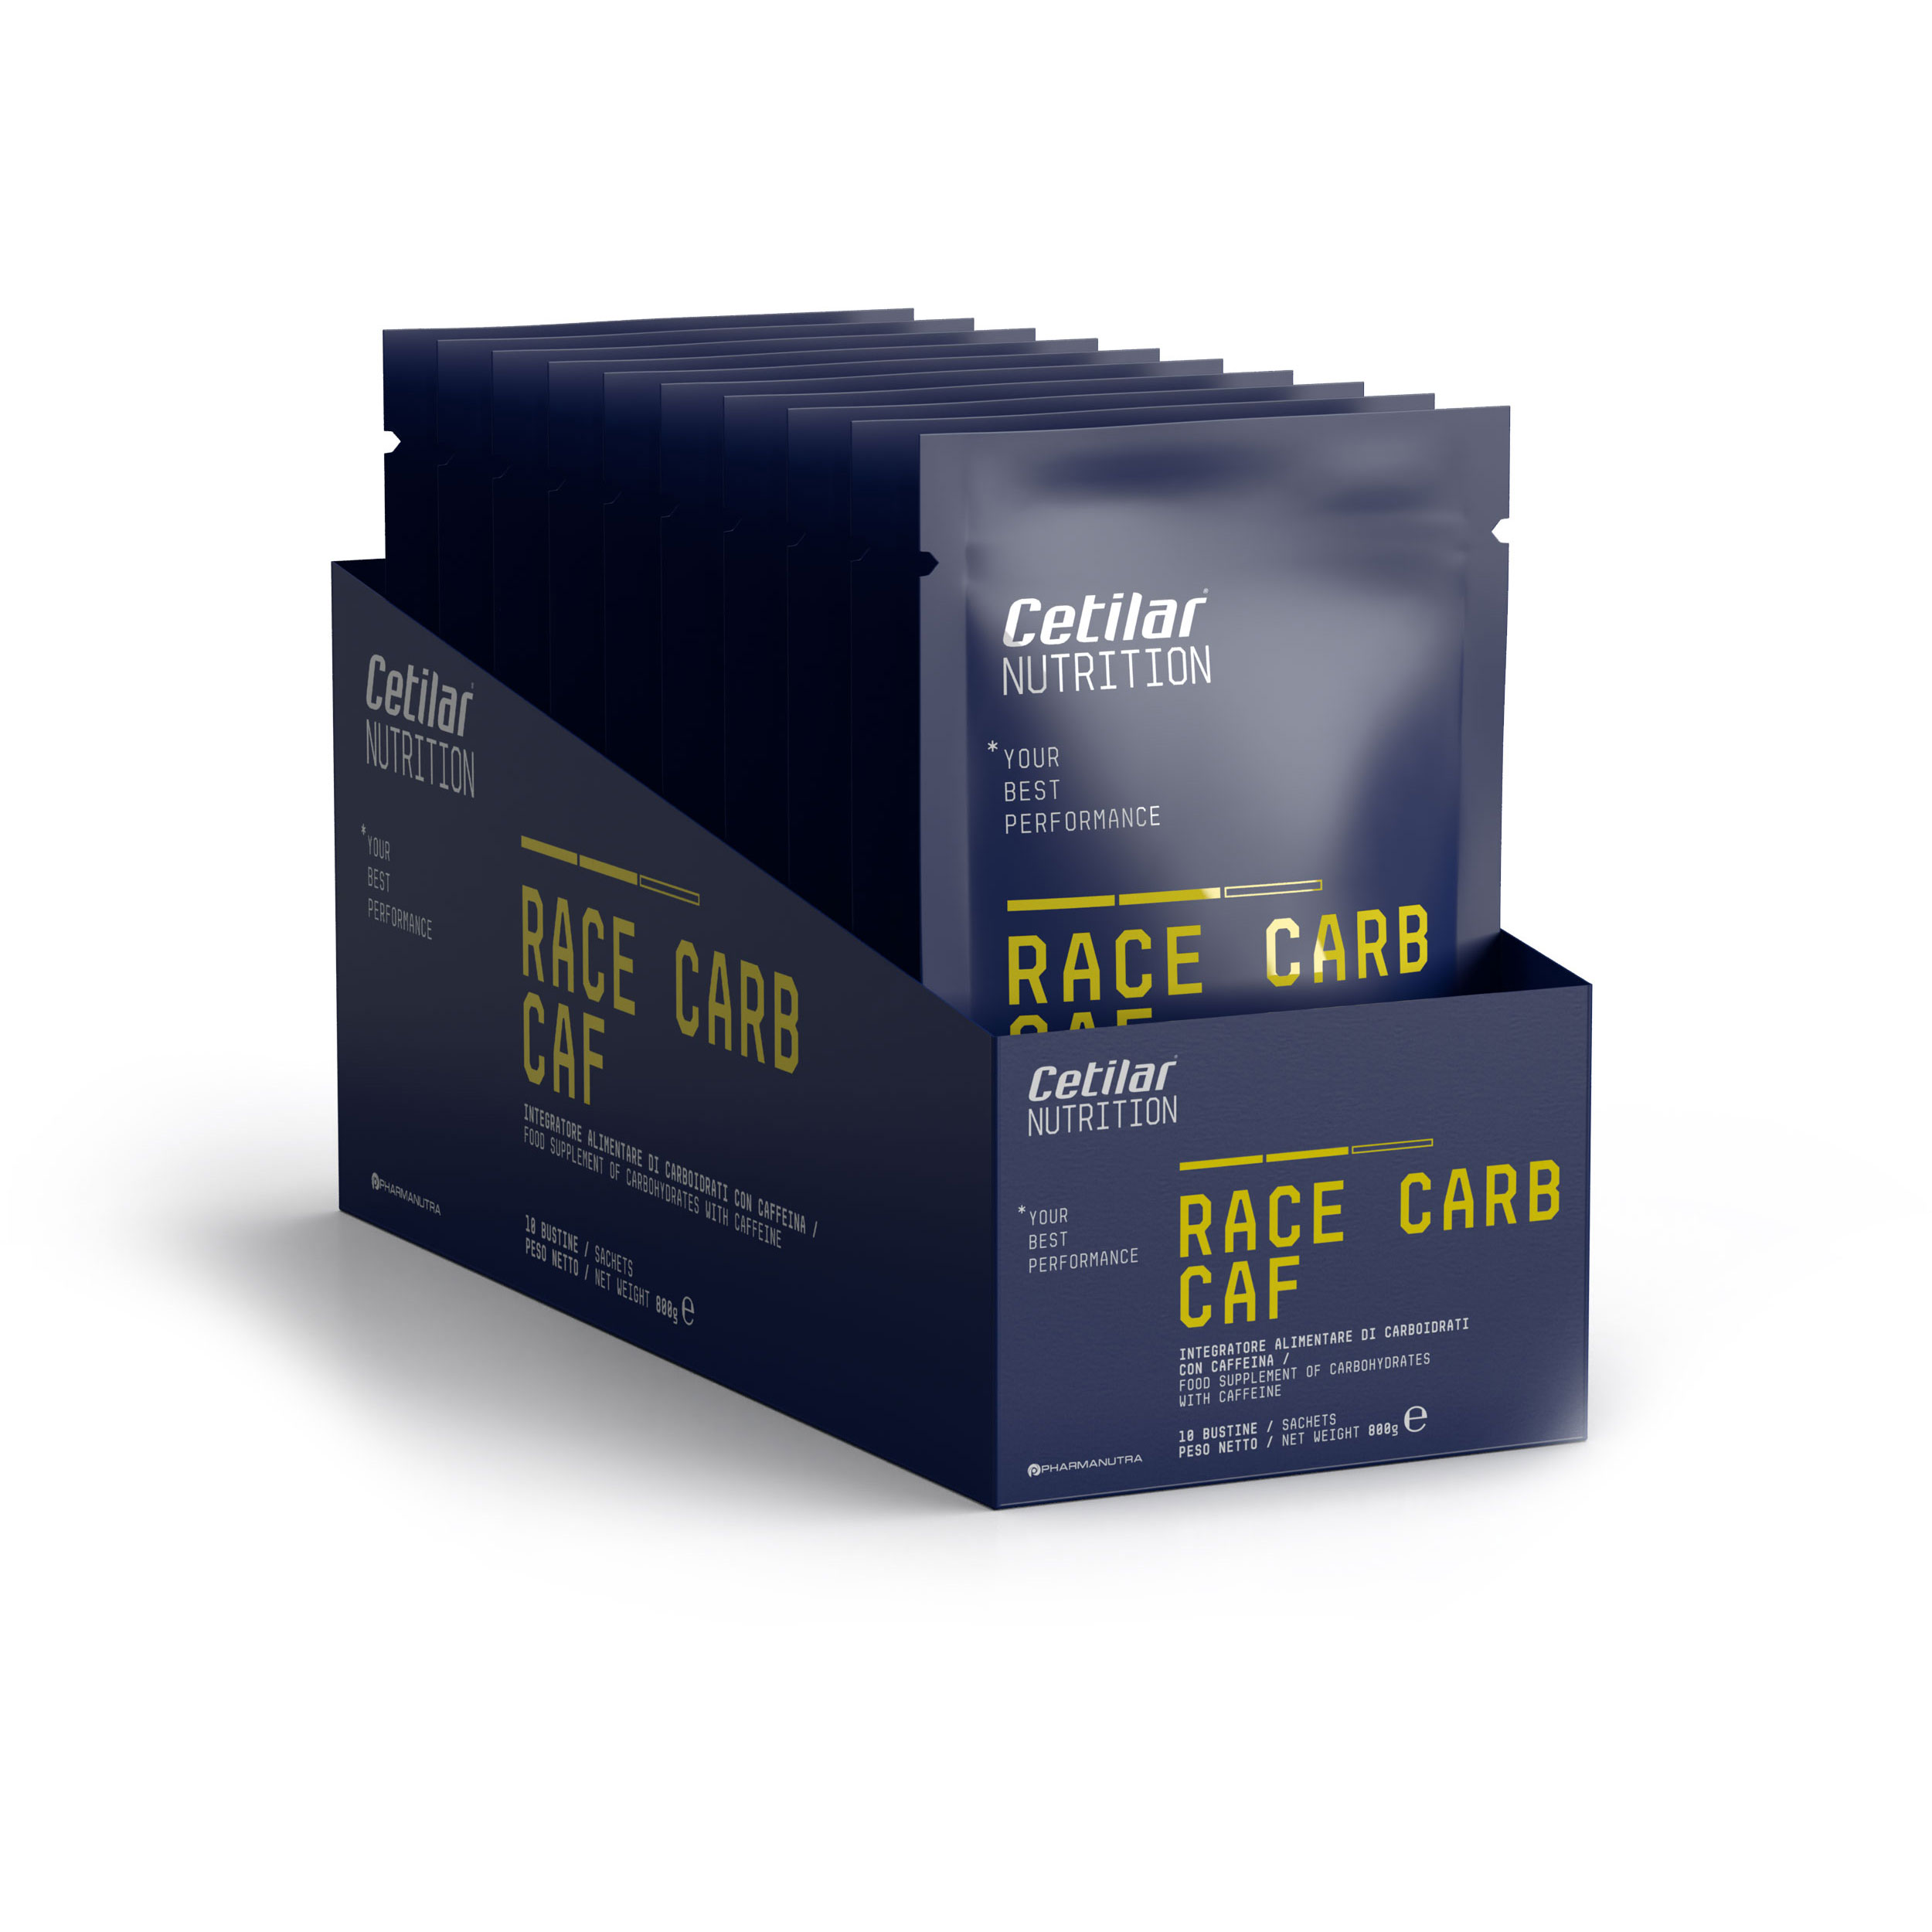 Race Carb Caf – Cetilar®